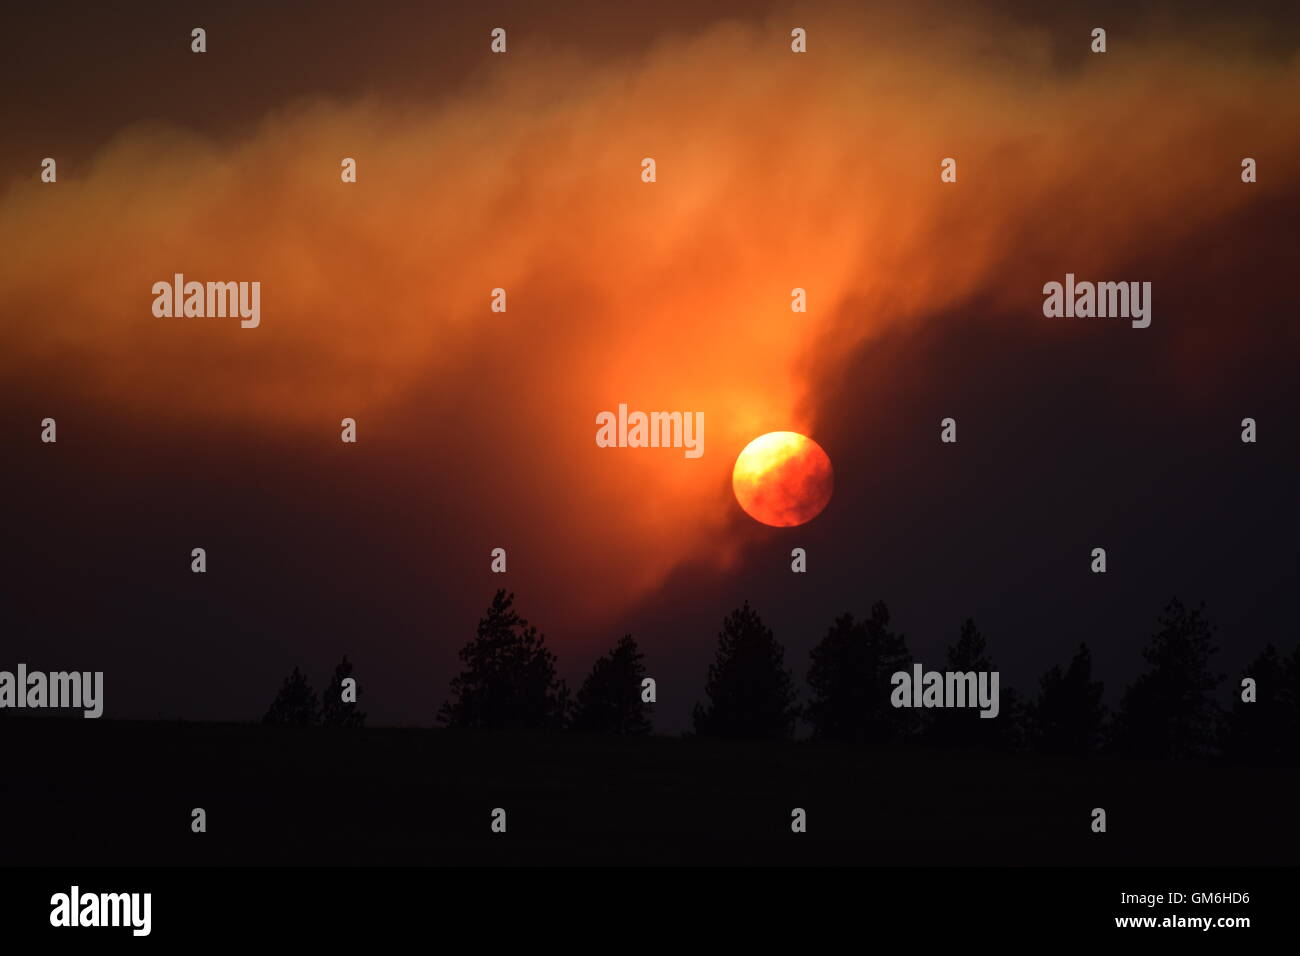 Smoke filled sunset. Stock Photo